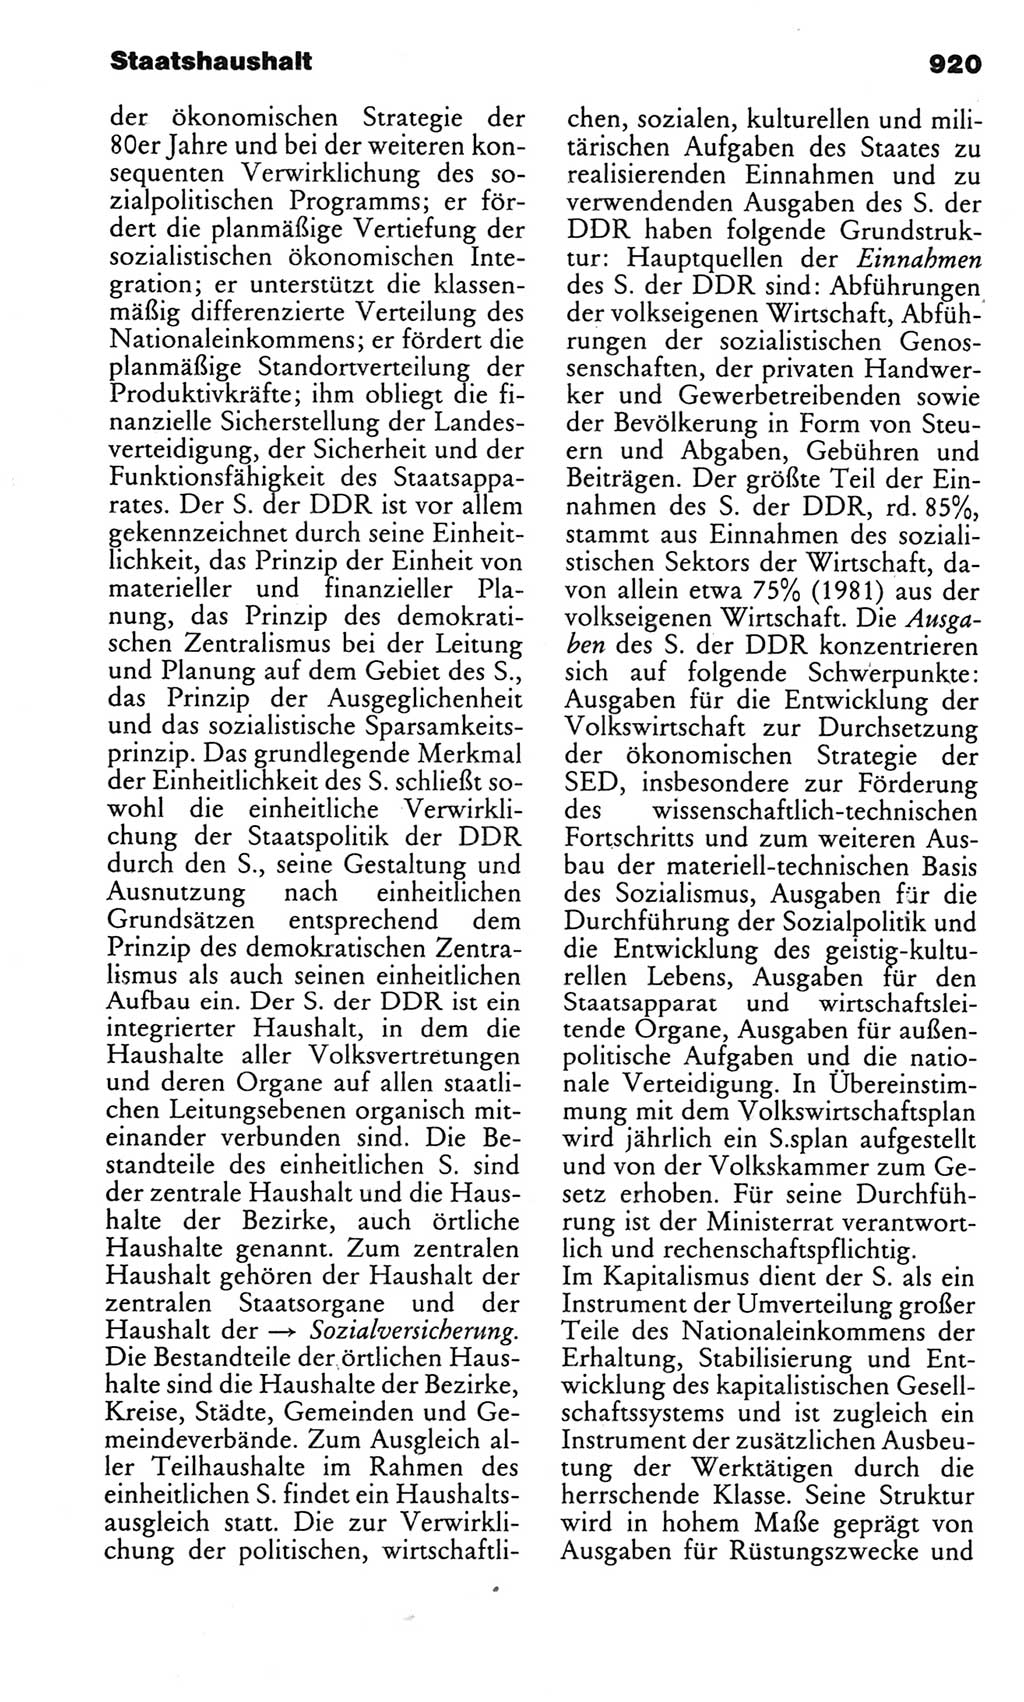 Kleines politisches Wörterbuch [Deutsche Demokratische Republik (DDR)] 1983, Seite 920 (Kl. pol. Wb. DDR 1983, S. 920)